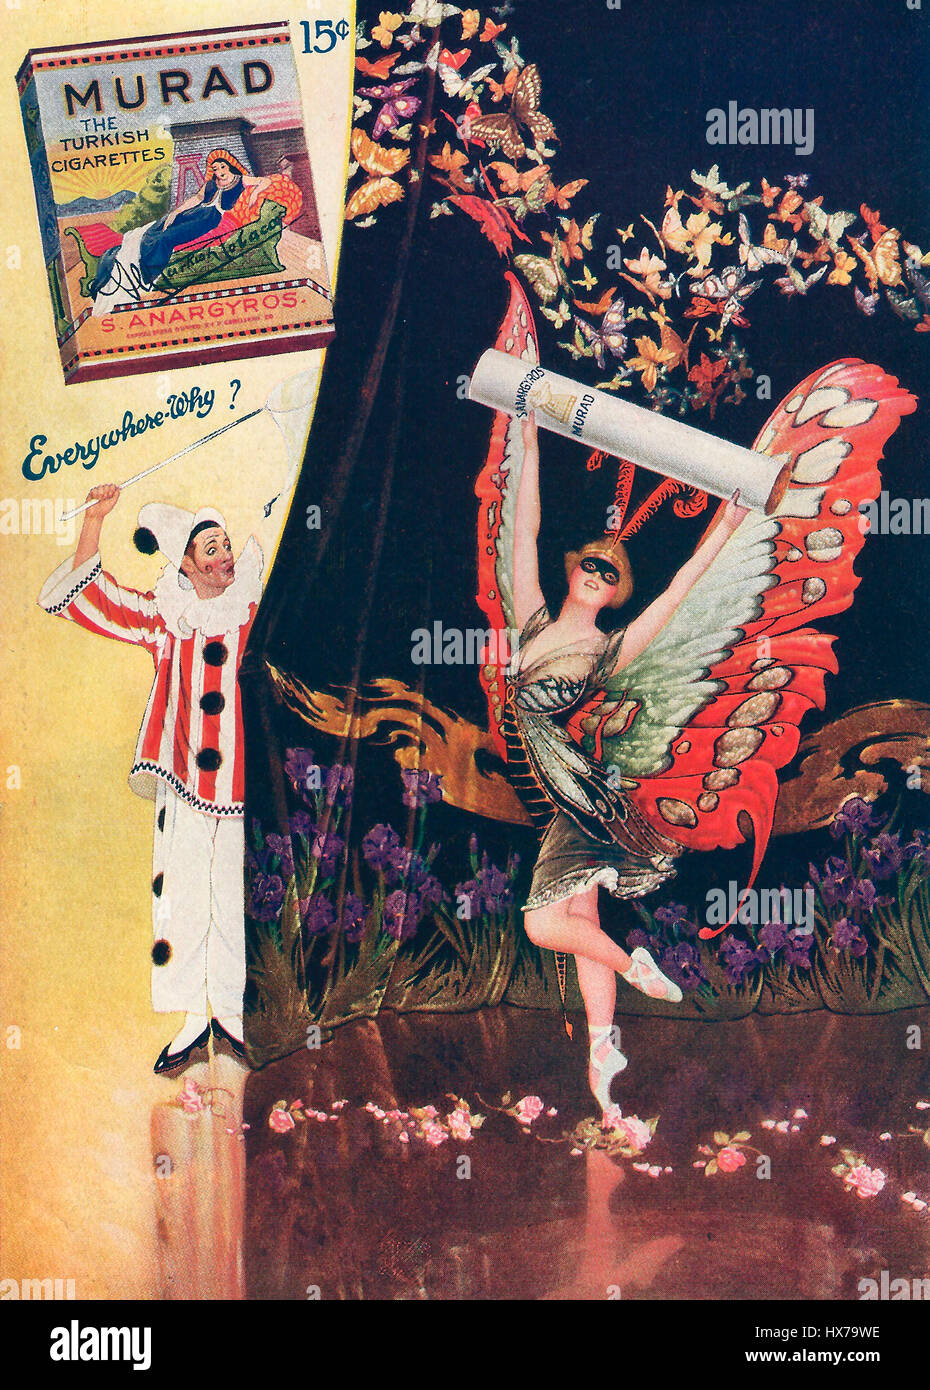 Publicité de cigarettes Murad, vers 1916 Banque D'Images